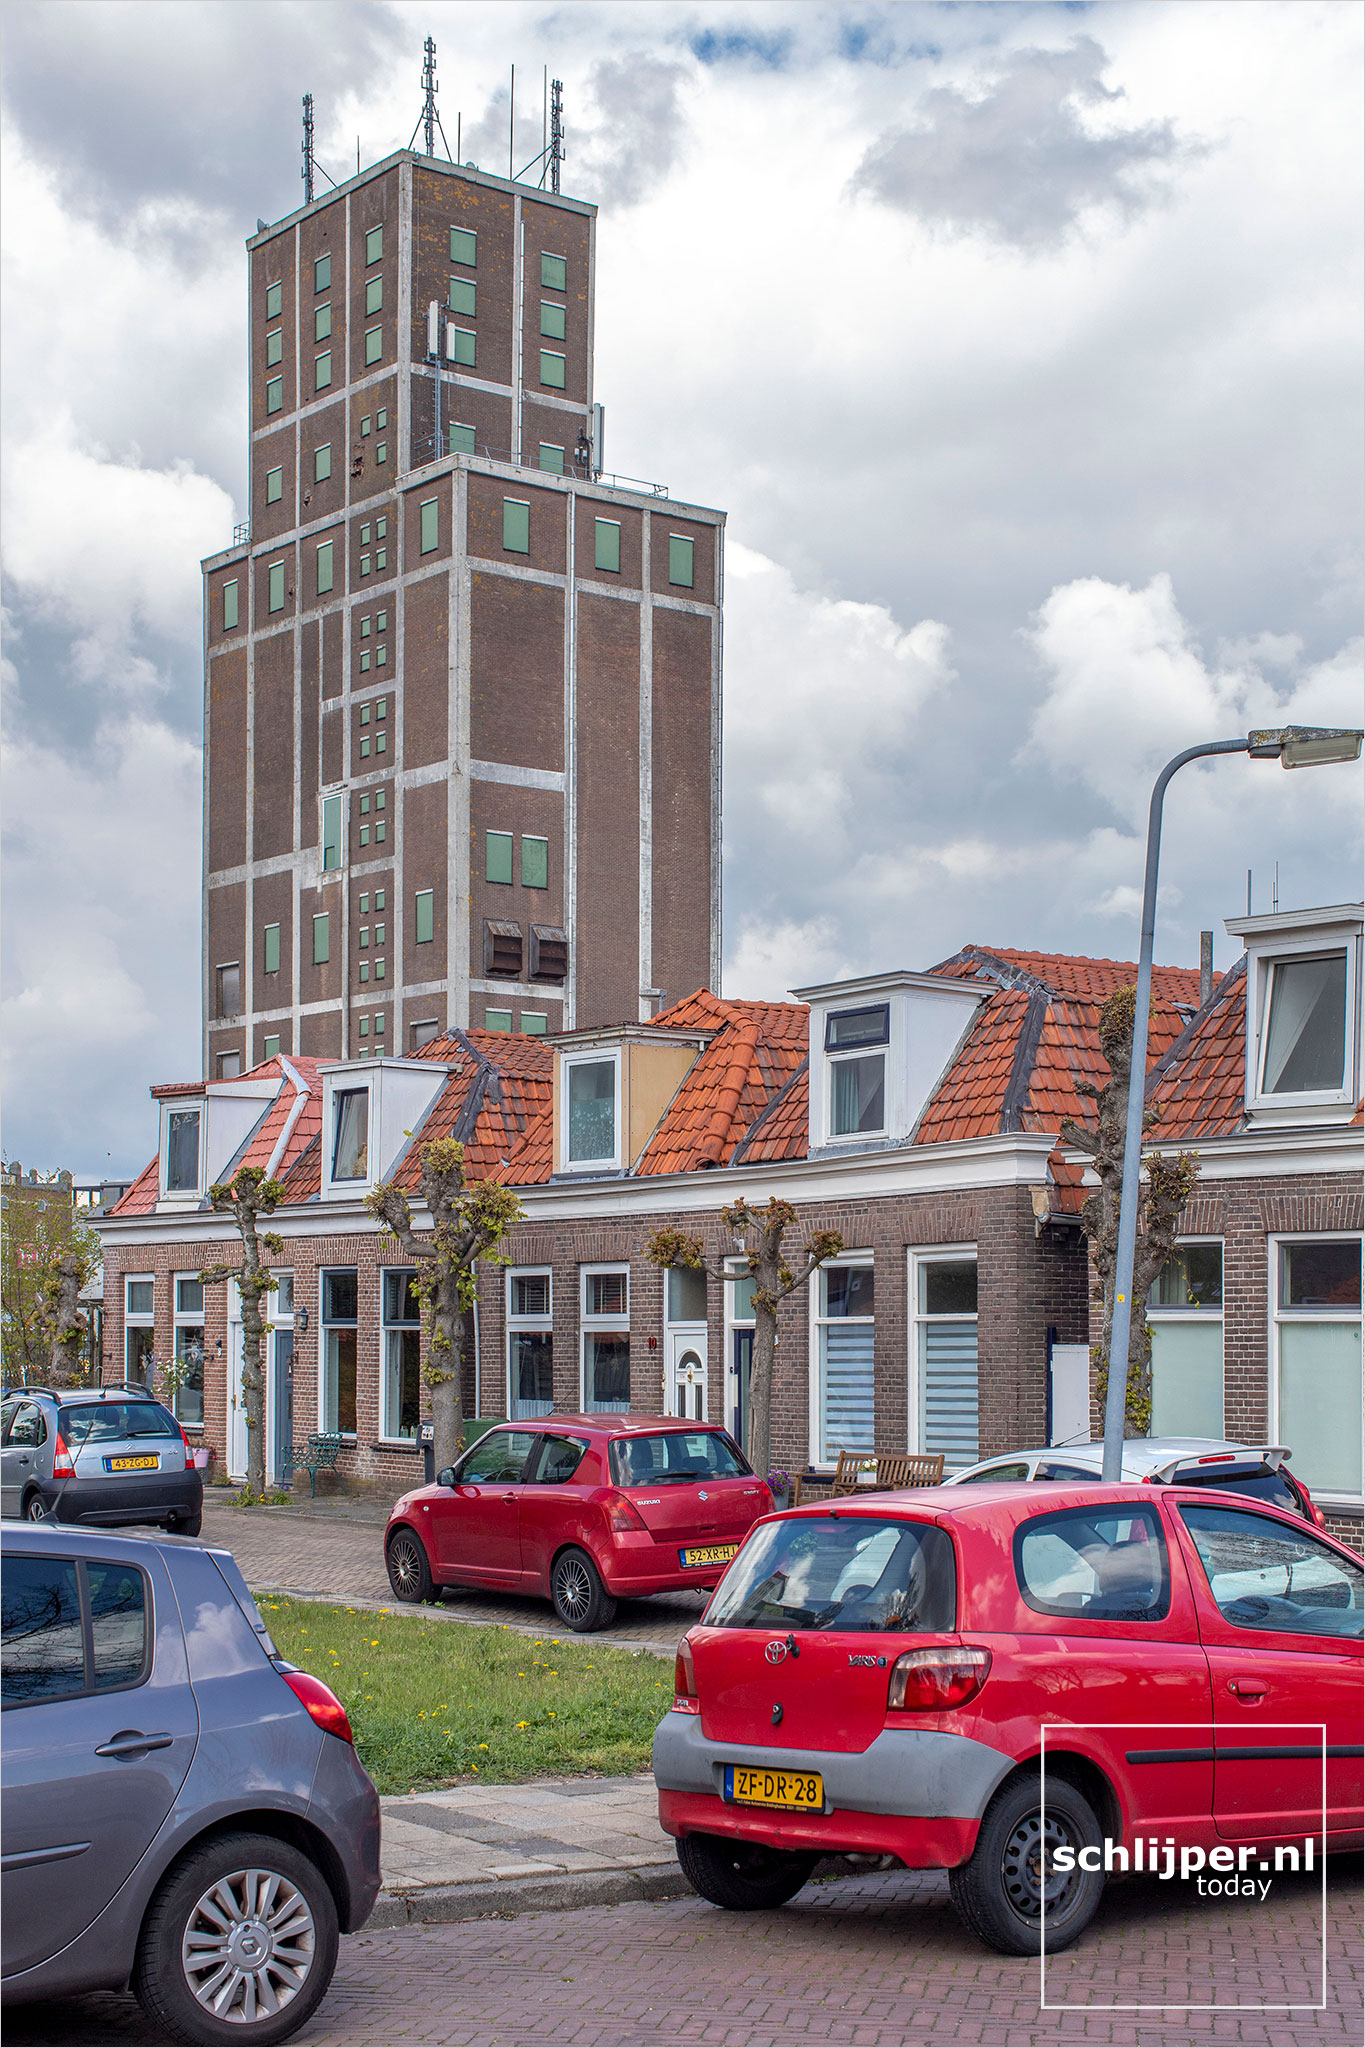 The Netherlands, Meppel, 1 mei 2021